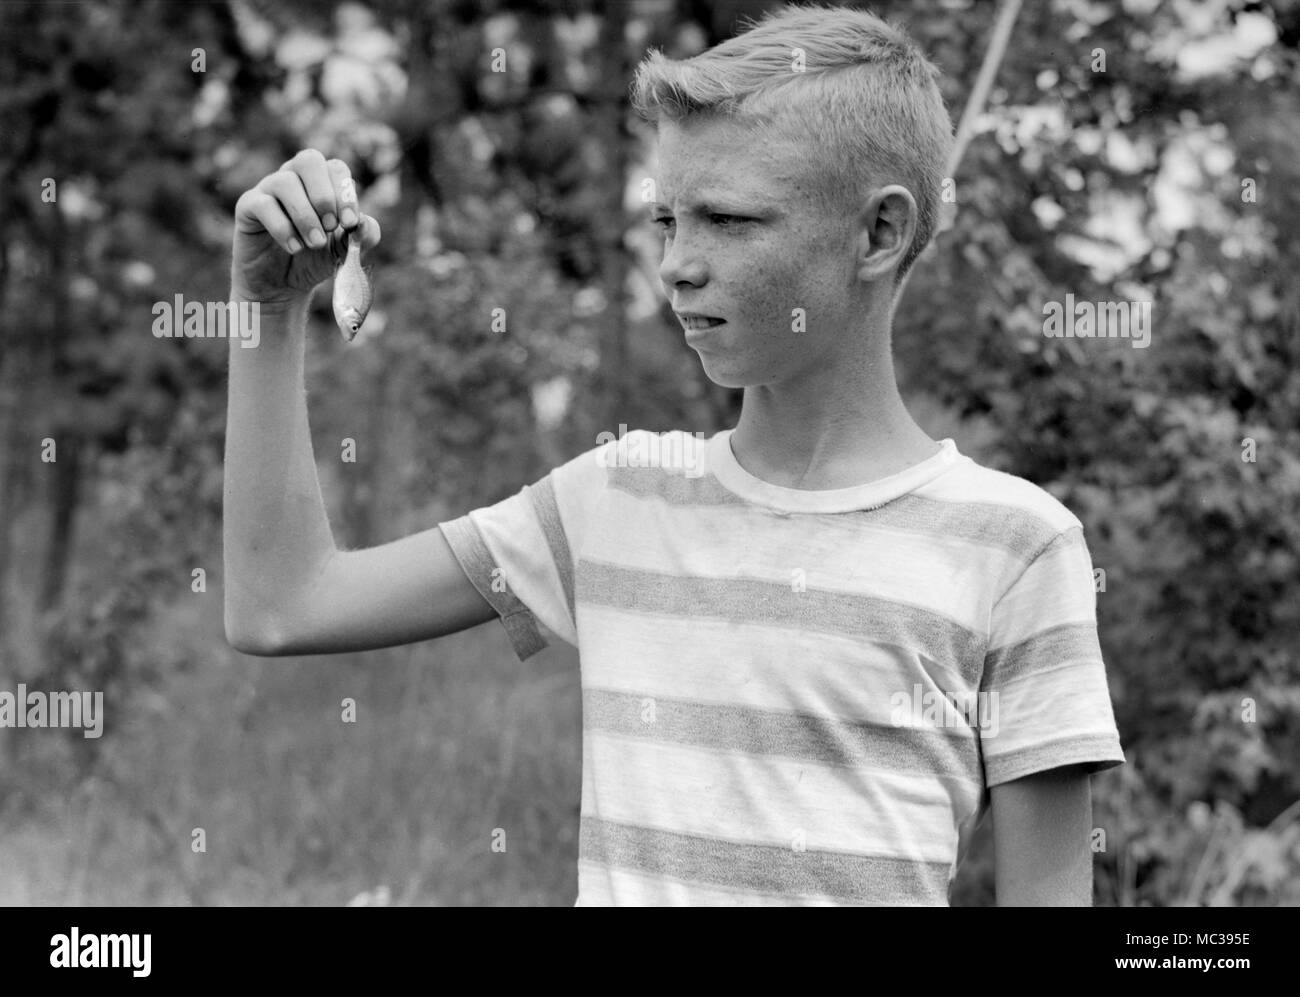 Un jeune garçon semble s'inquiéter au sujet de la taille de ses prises, ca. 1960. Banque D'Images